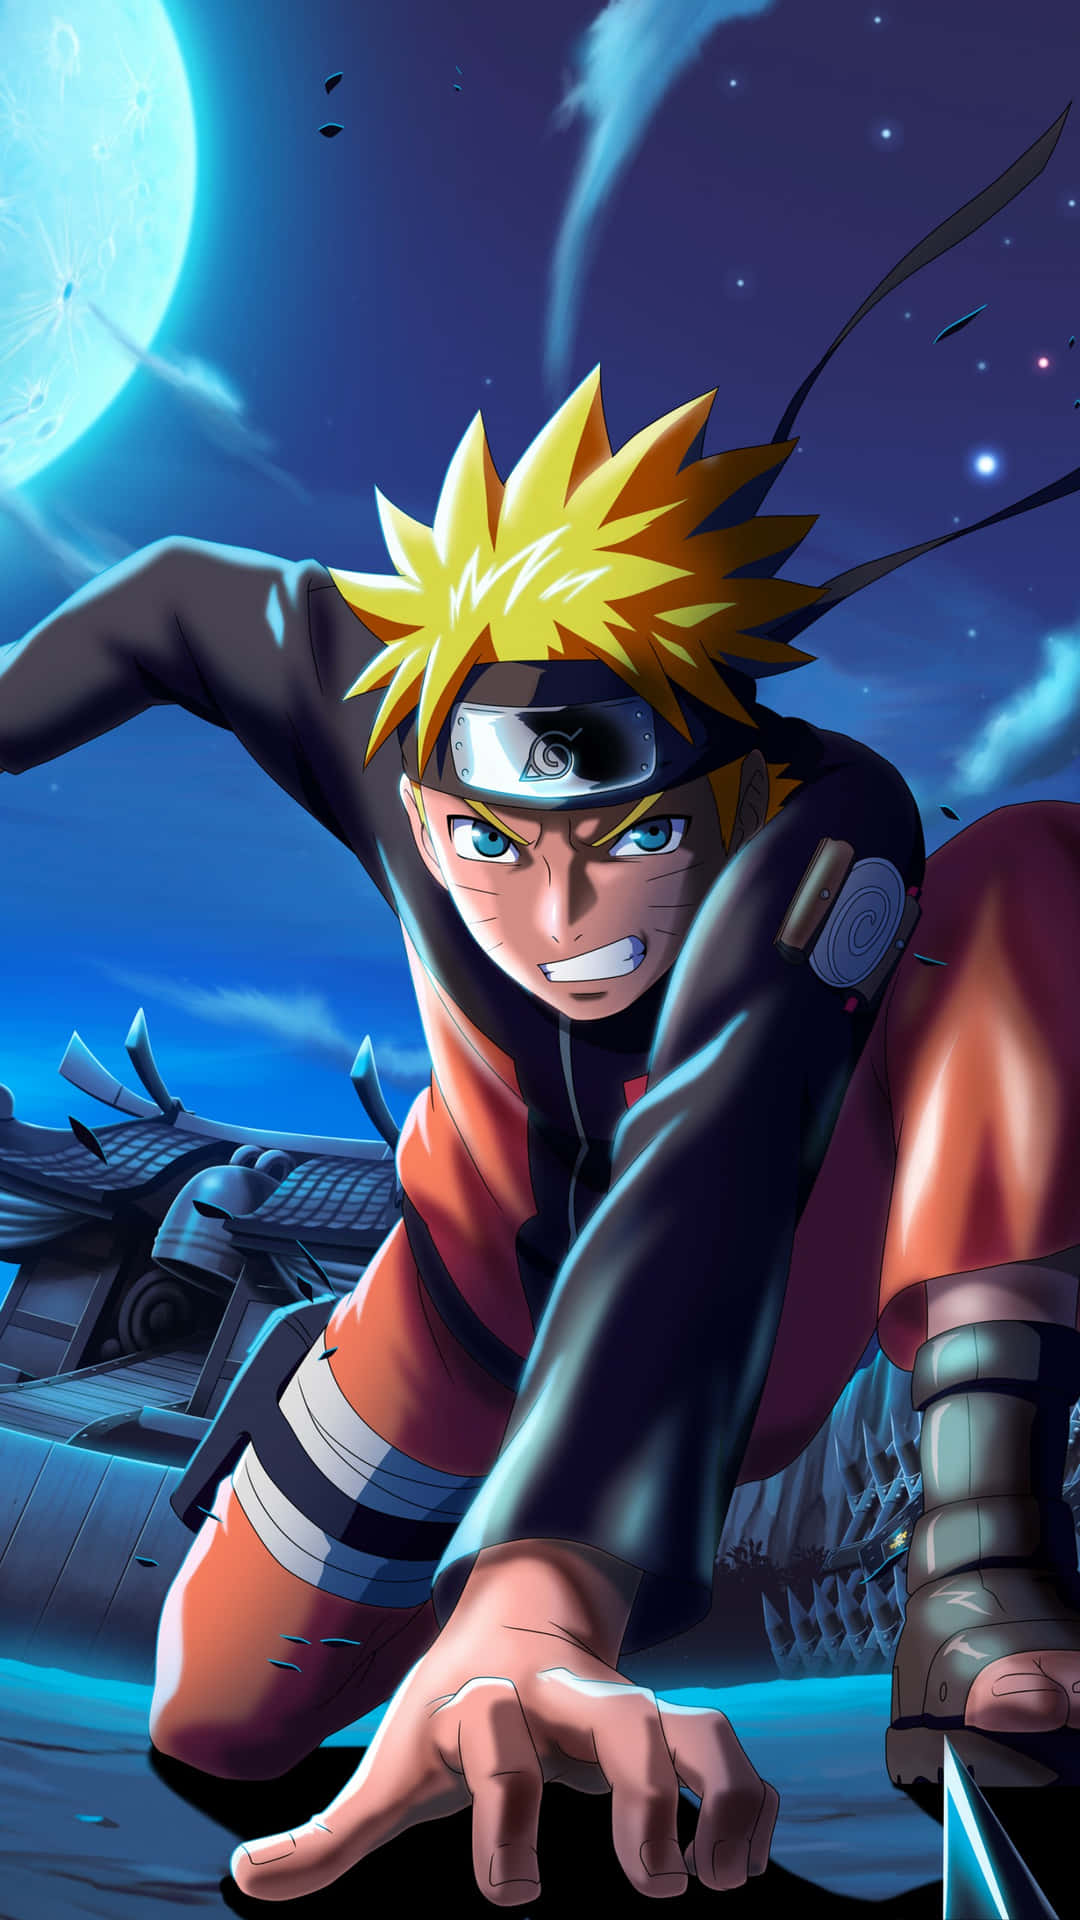 Naruto Uzumaki là một trong những nhân vật anime được yêu thích nhất và người hâm mộ đang tìm kiếm hình nền 4K để thỏa mãn niềm đam mê của mình? Hãy đến đúng chỗ rồi đó! Chúng tôi có những hình ảnh tuyệt vời về Naruto Uzumaki trong hình nền 4K.